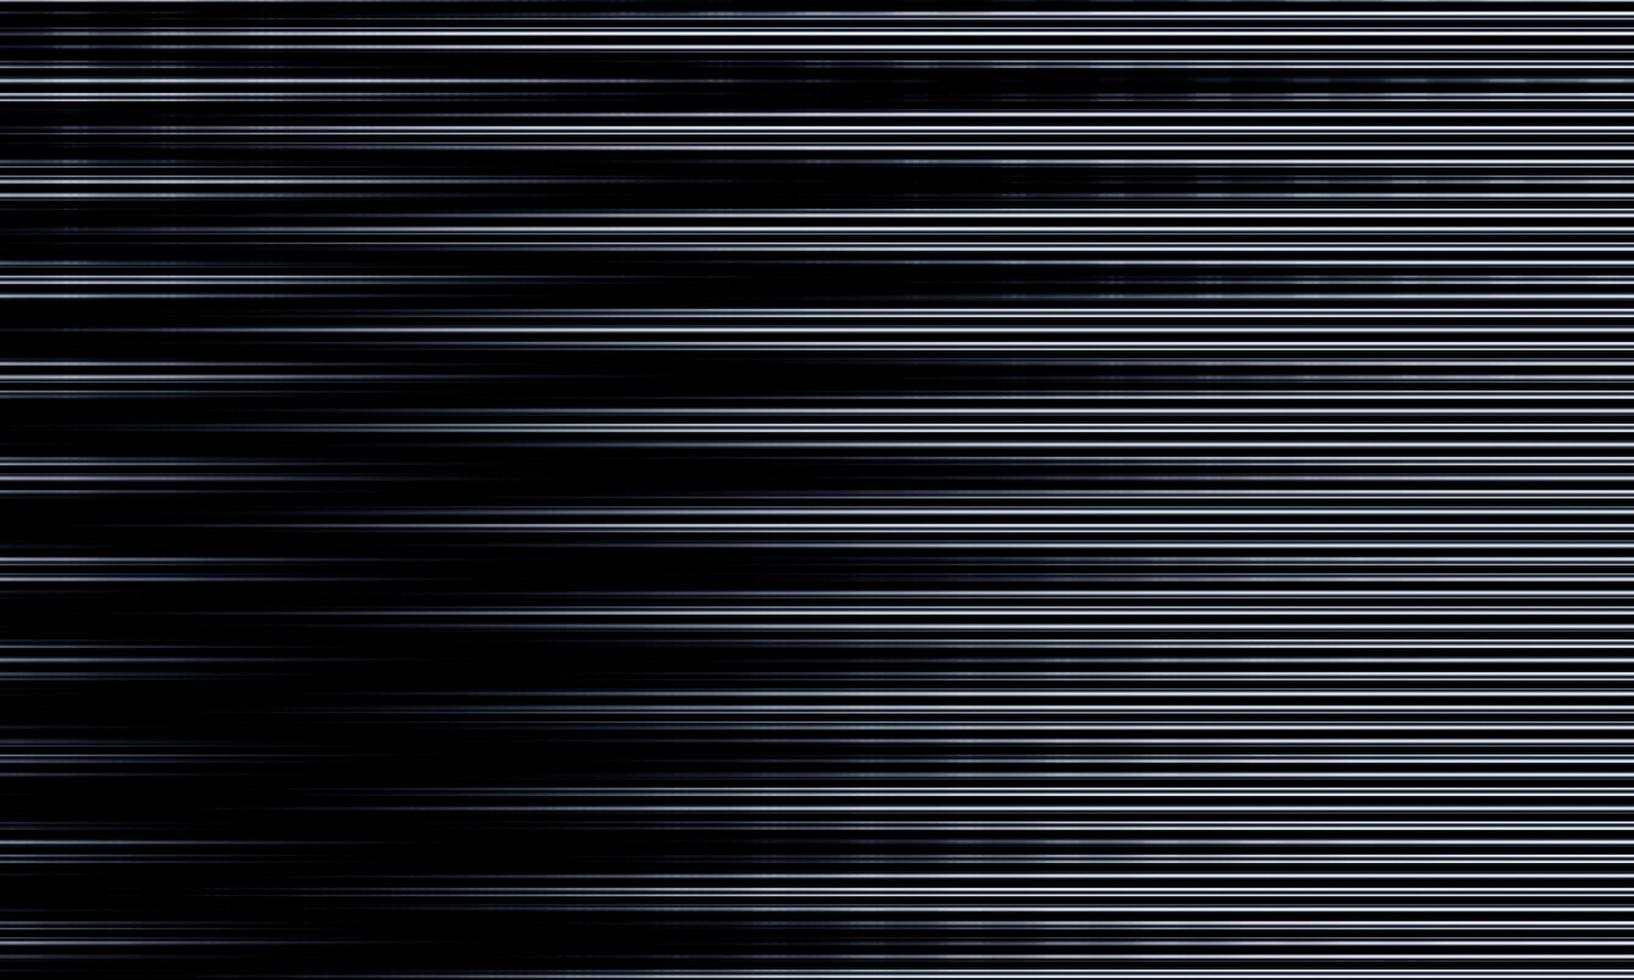 de ongelijke witte strepenachtergrond als klassiek glitch-overlay-effect. de oude tv-ruis statische textuur op een zwarte achtergrond. een retro textuurcollectie. foto